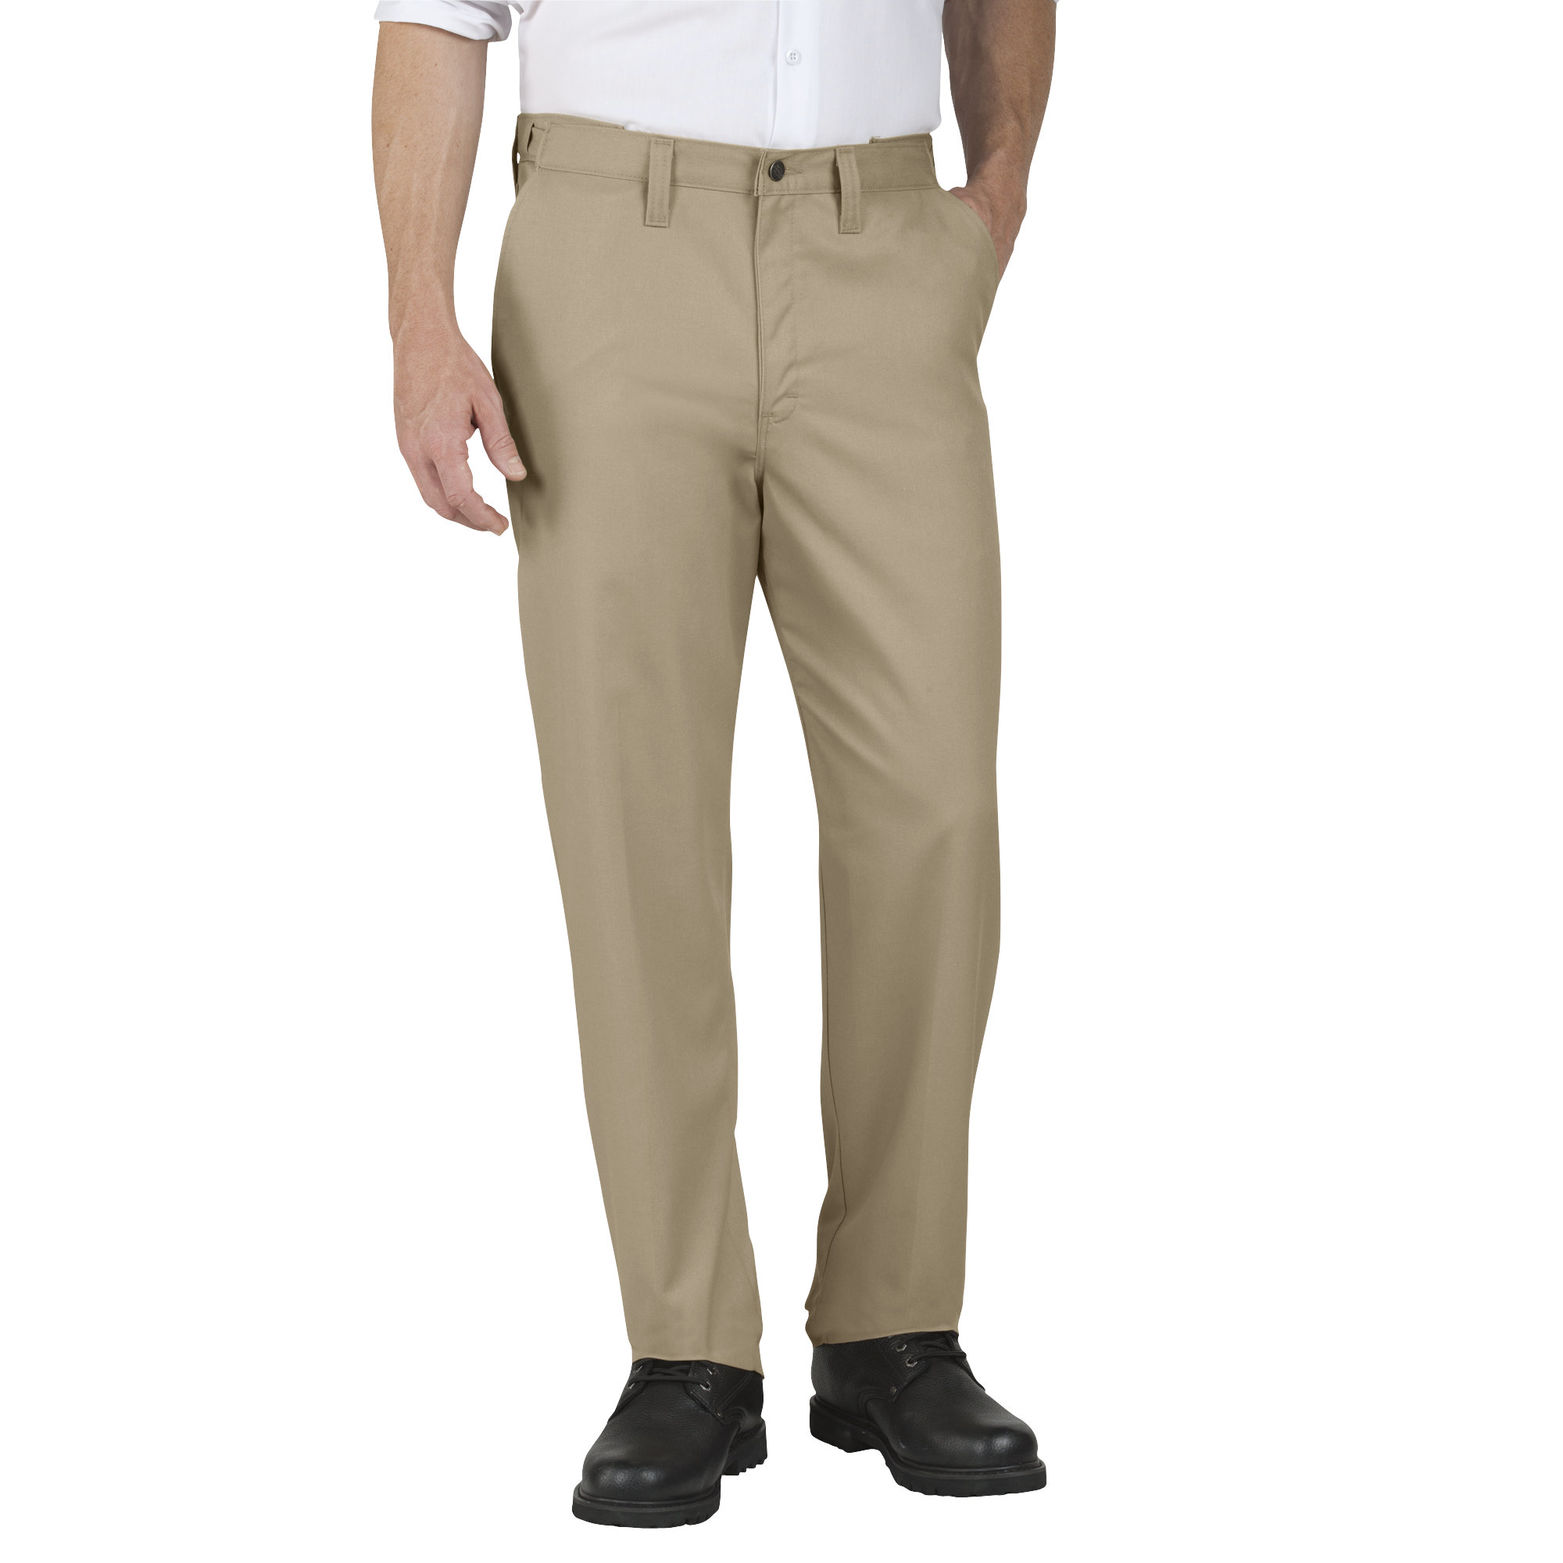 Buy White Linen Lycra Comfort Fit Mens Trouser Online | Tistabene -  Tistabene